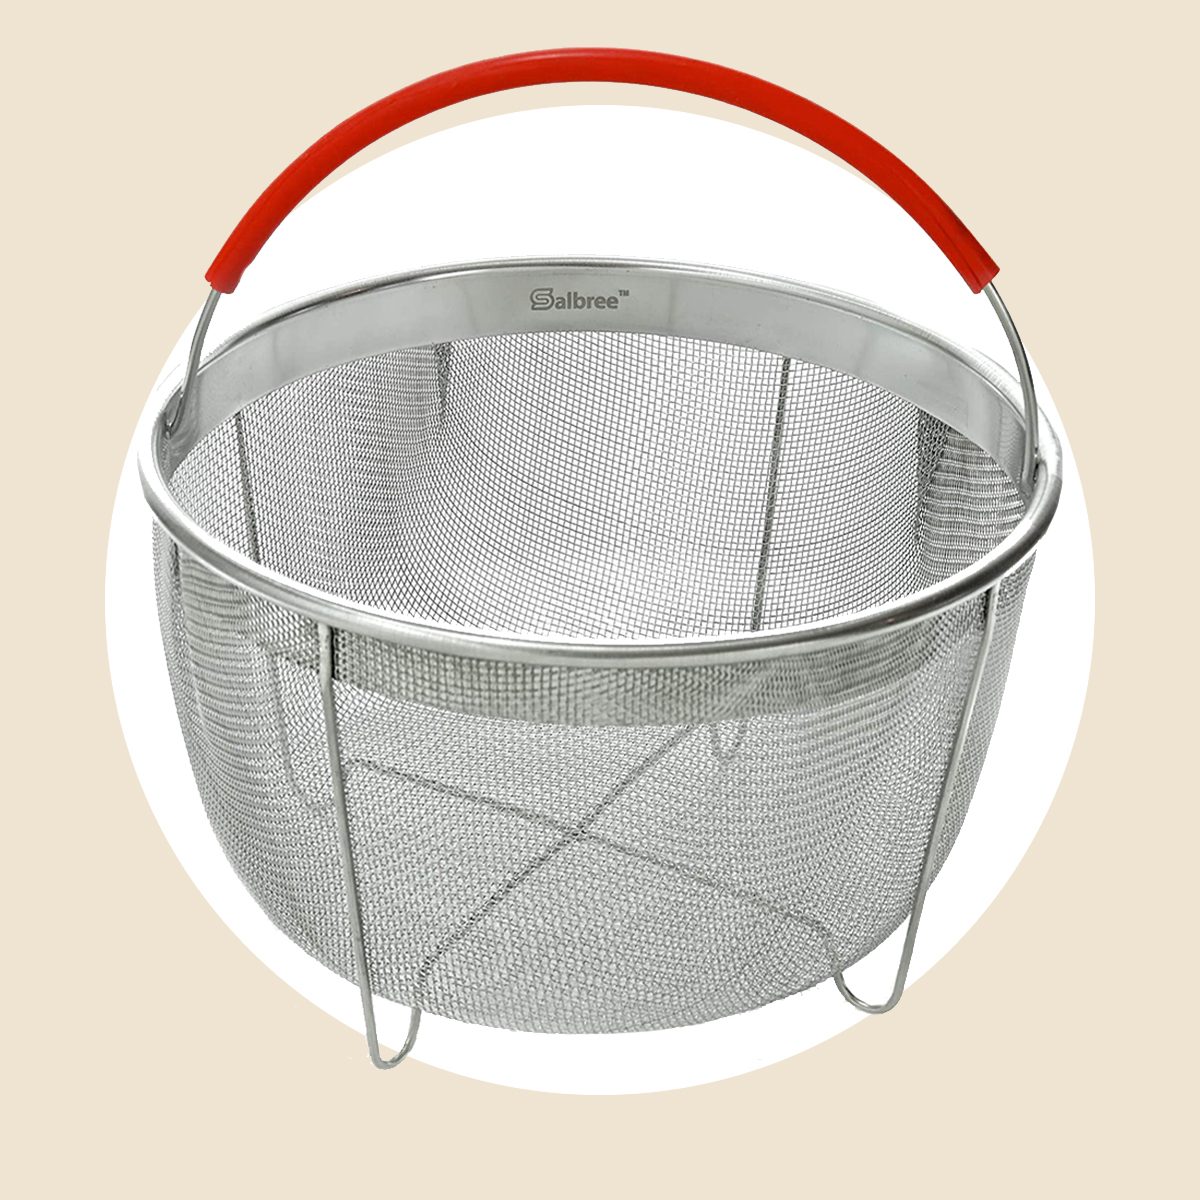 Salbree Instant Pot Steamer Basket - 8 Quart